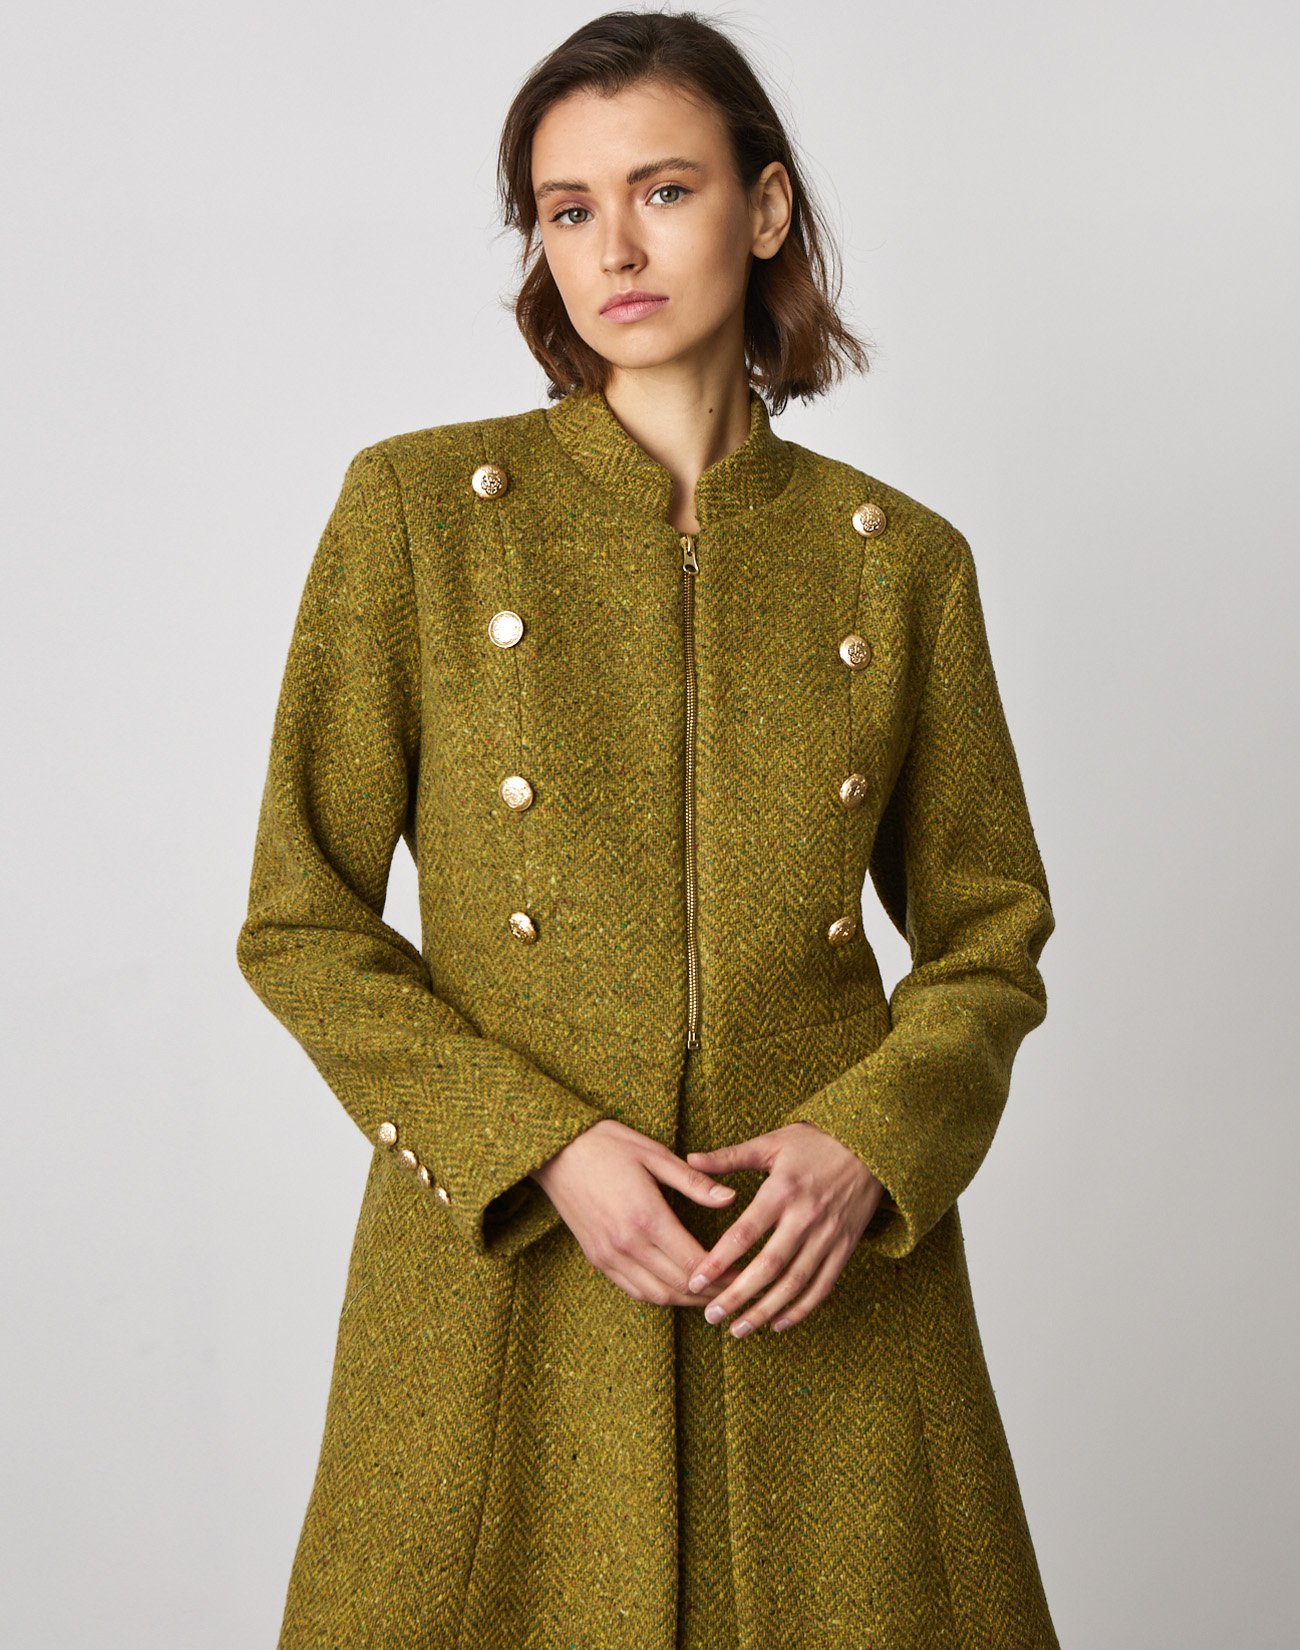 Herringbone coat with golden buttons